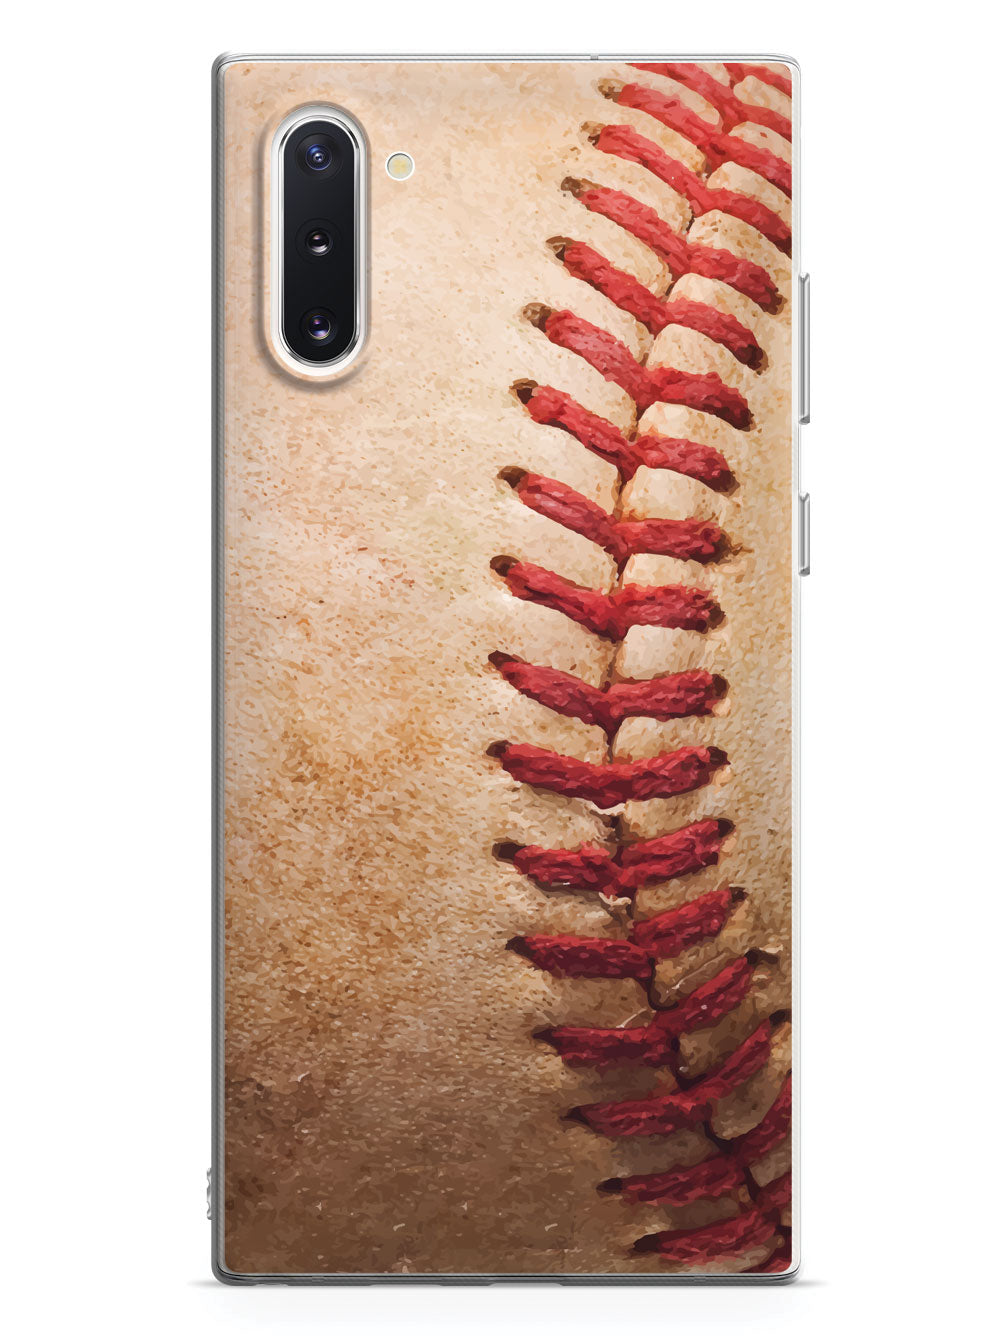 Baseball Design Case